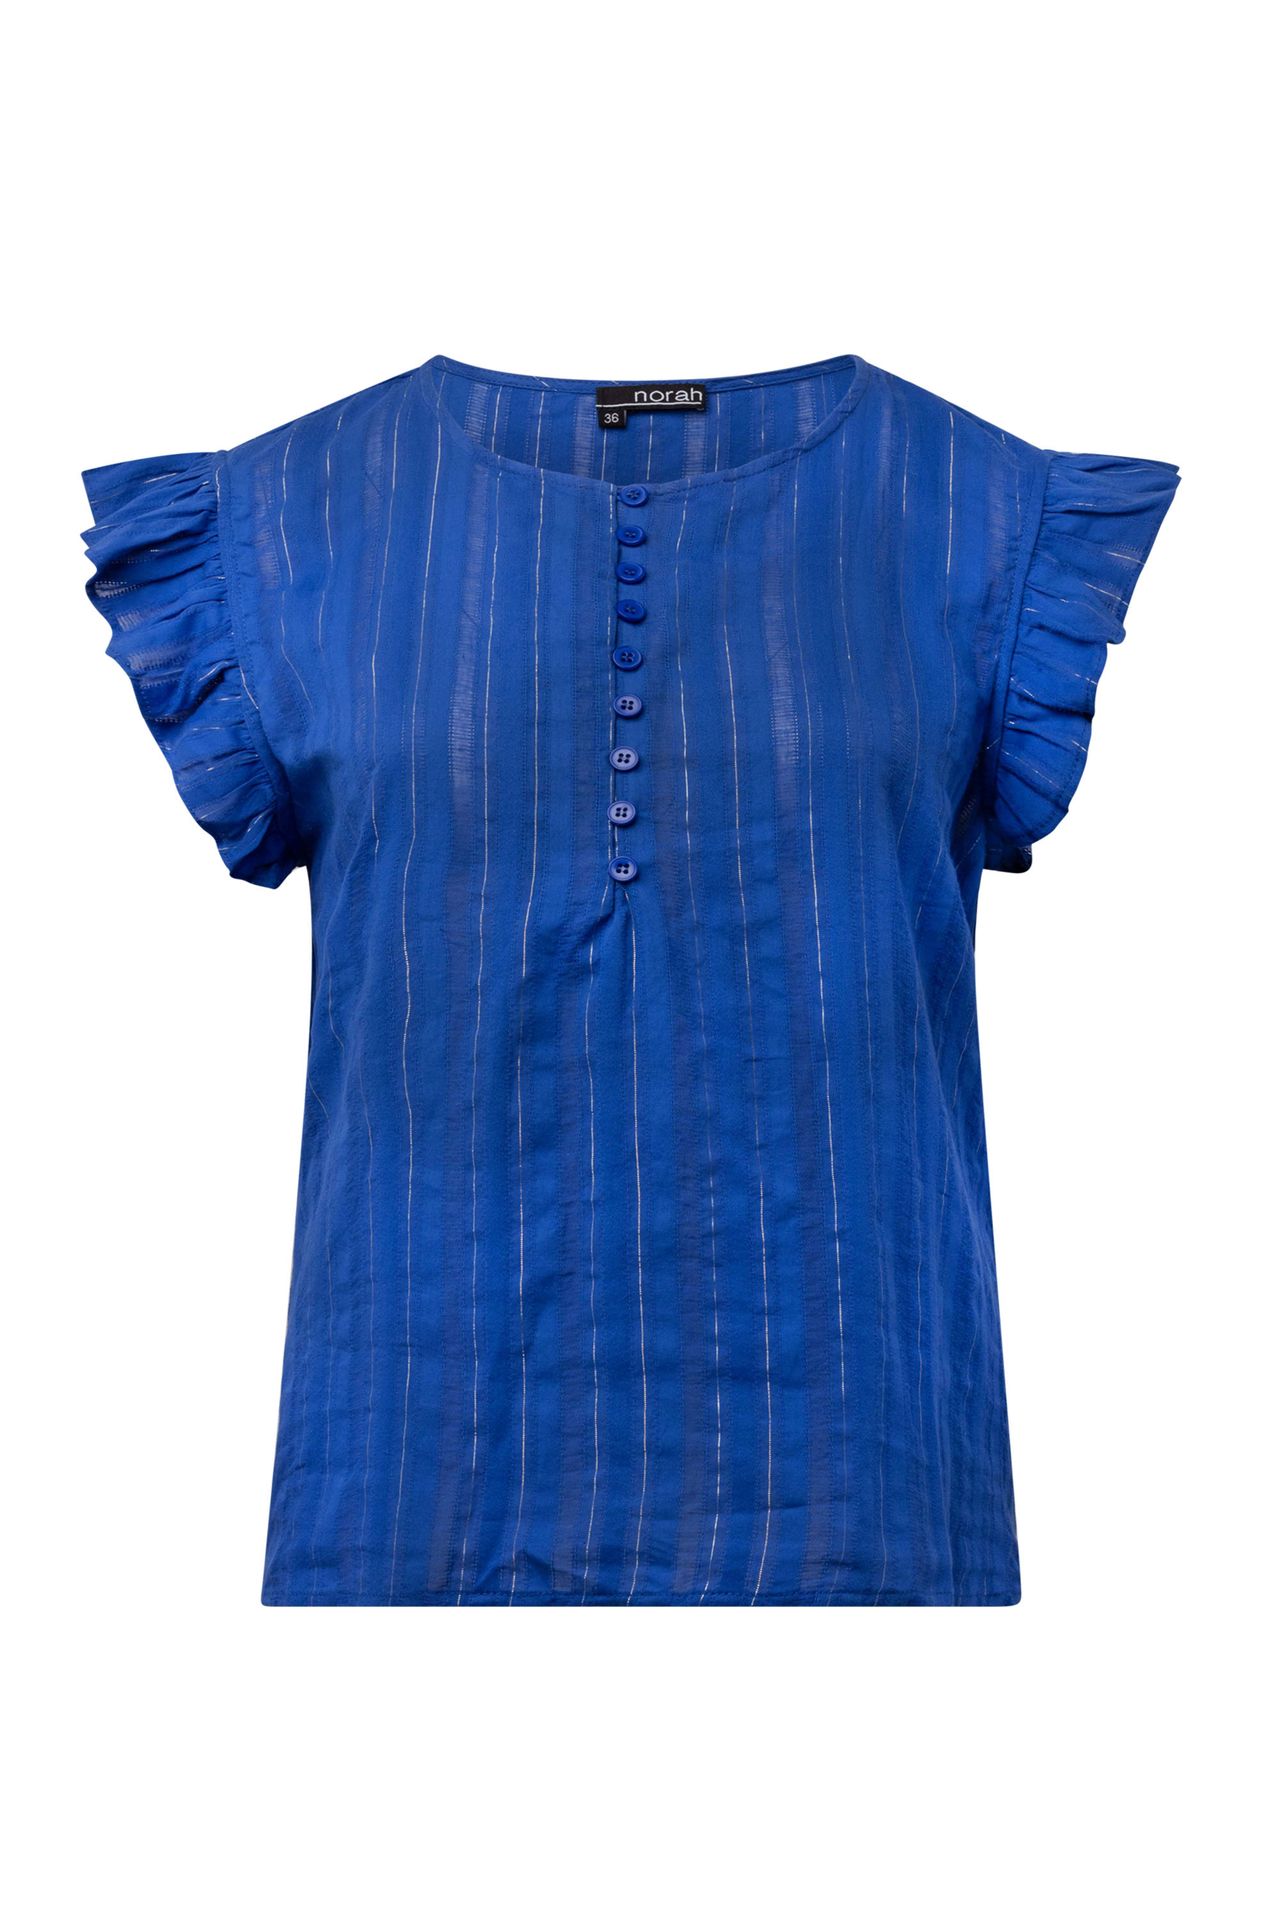  Blauwe blouse cobalt multicolor 214812-469-46